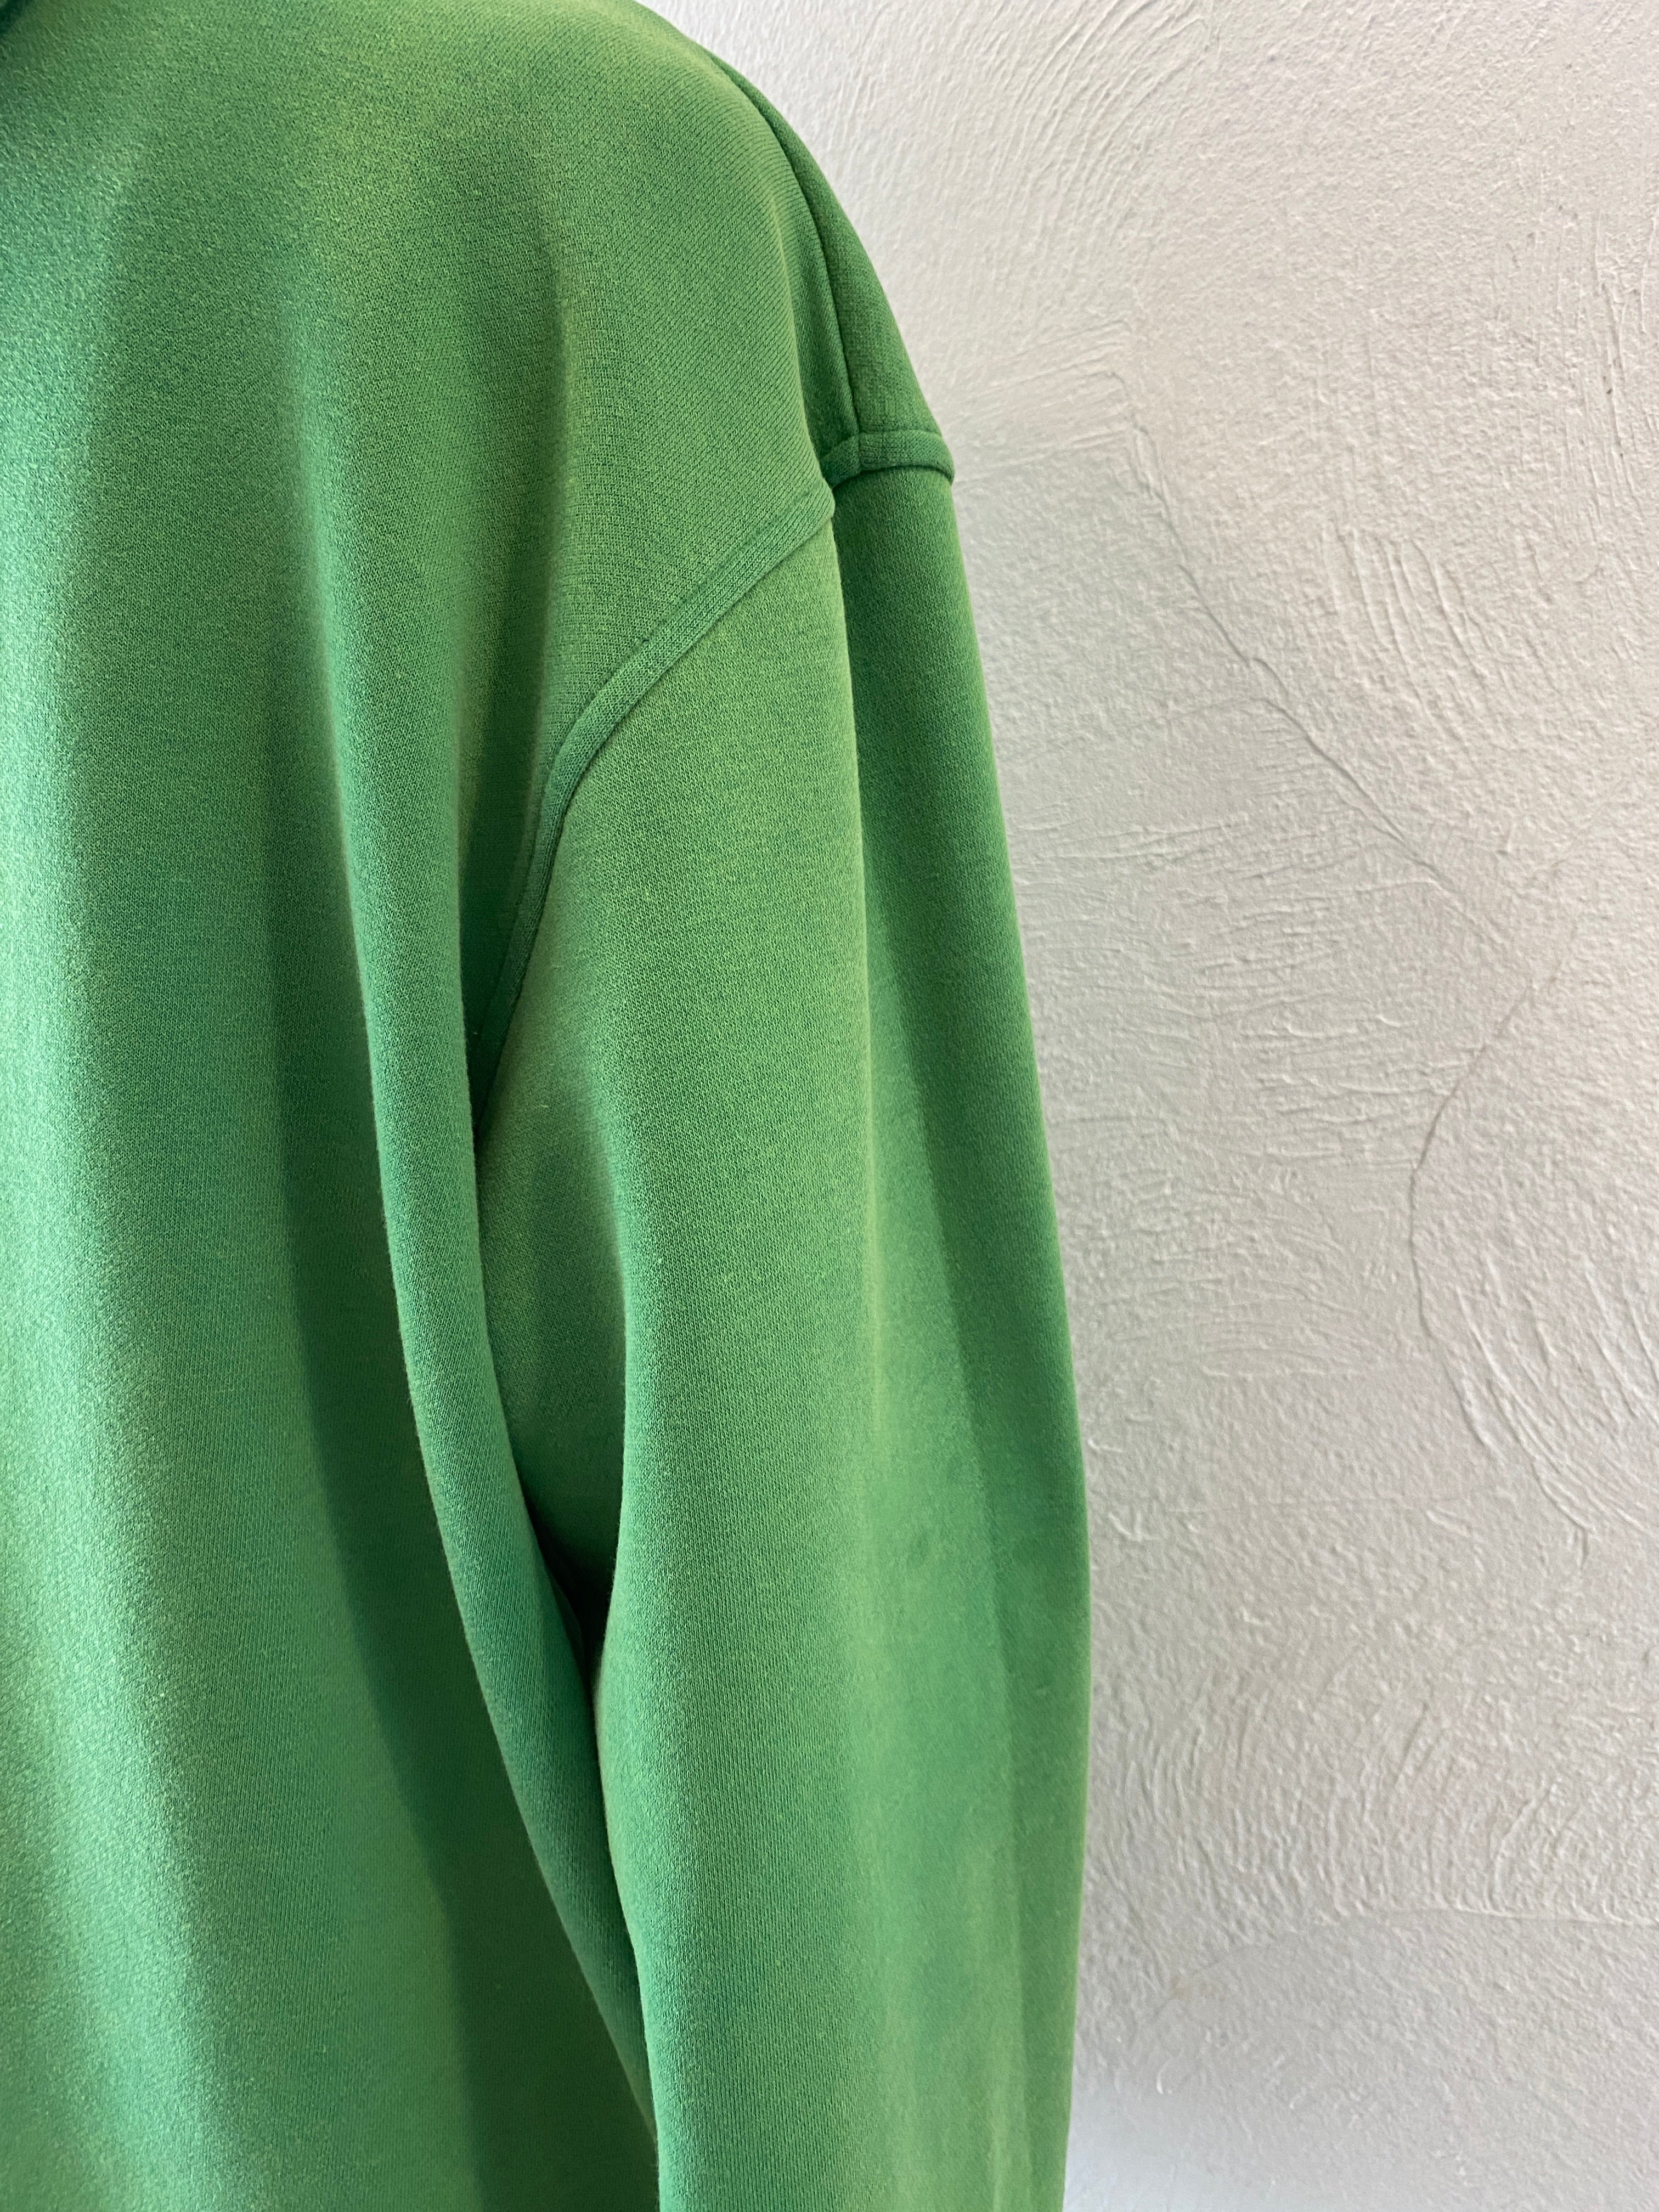 green hoodie sweat